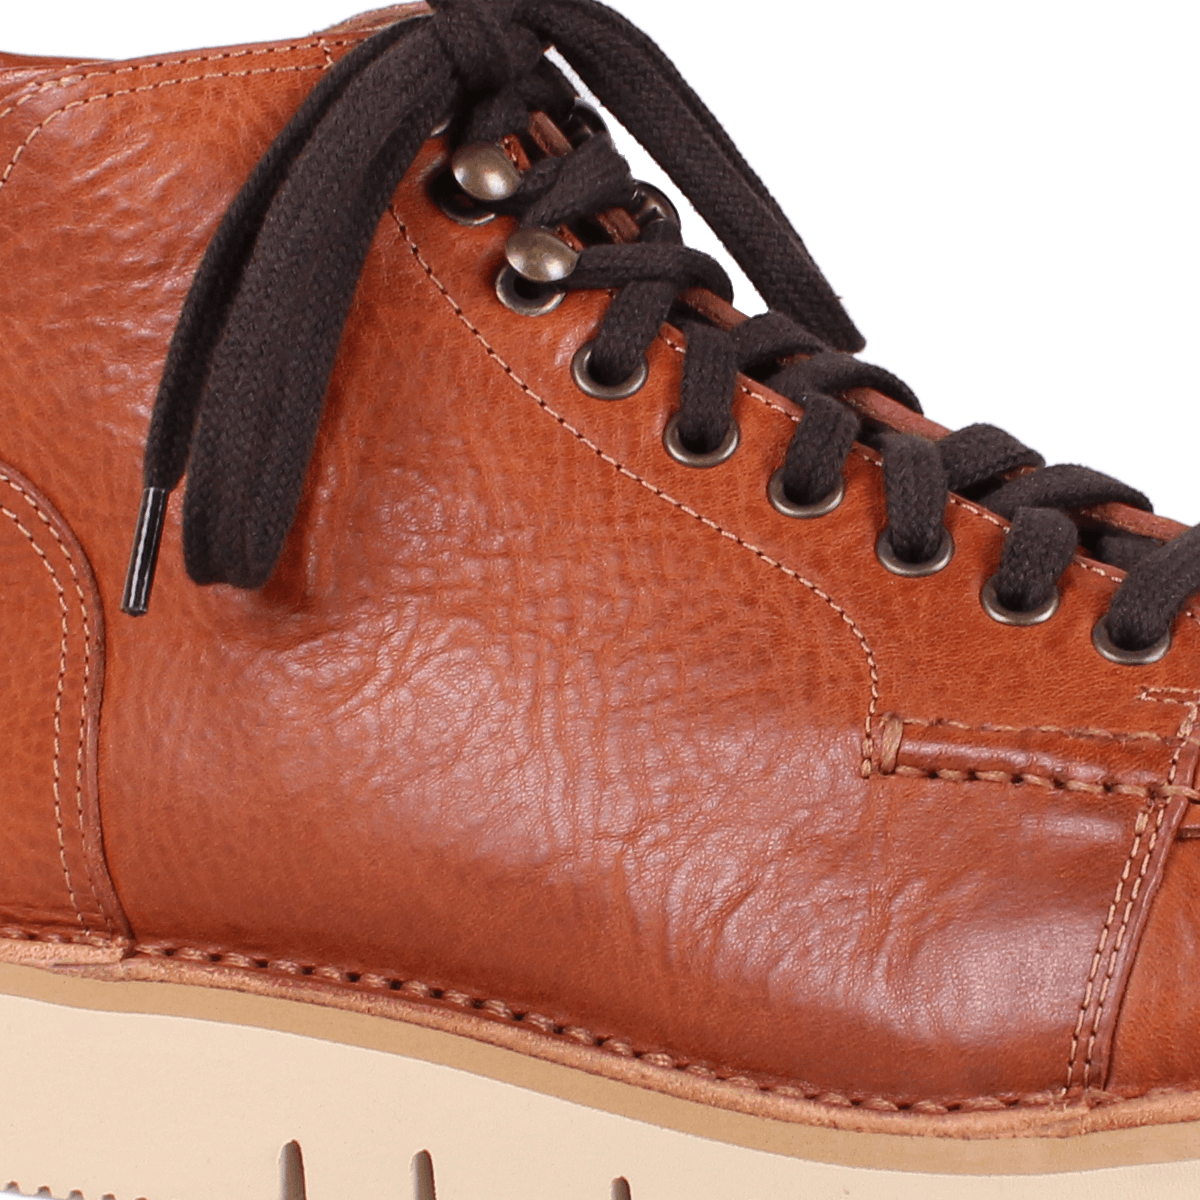 Brandy Leather Z500 Nebraska Boots  Fracap   